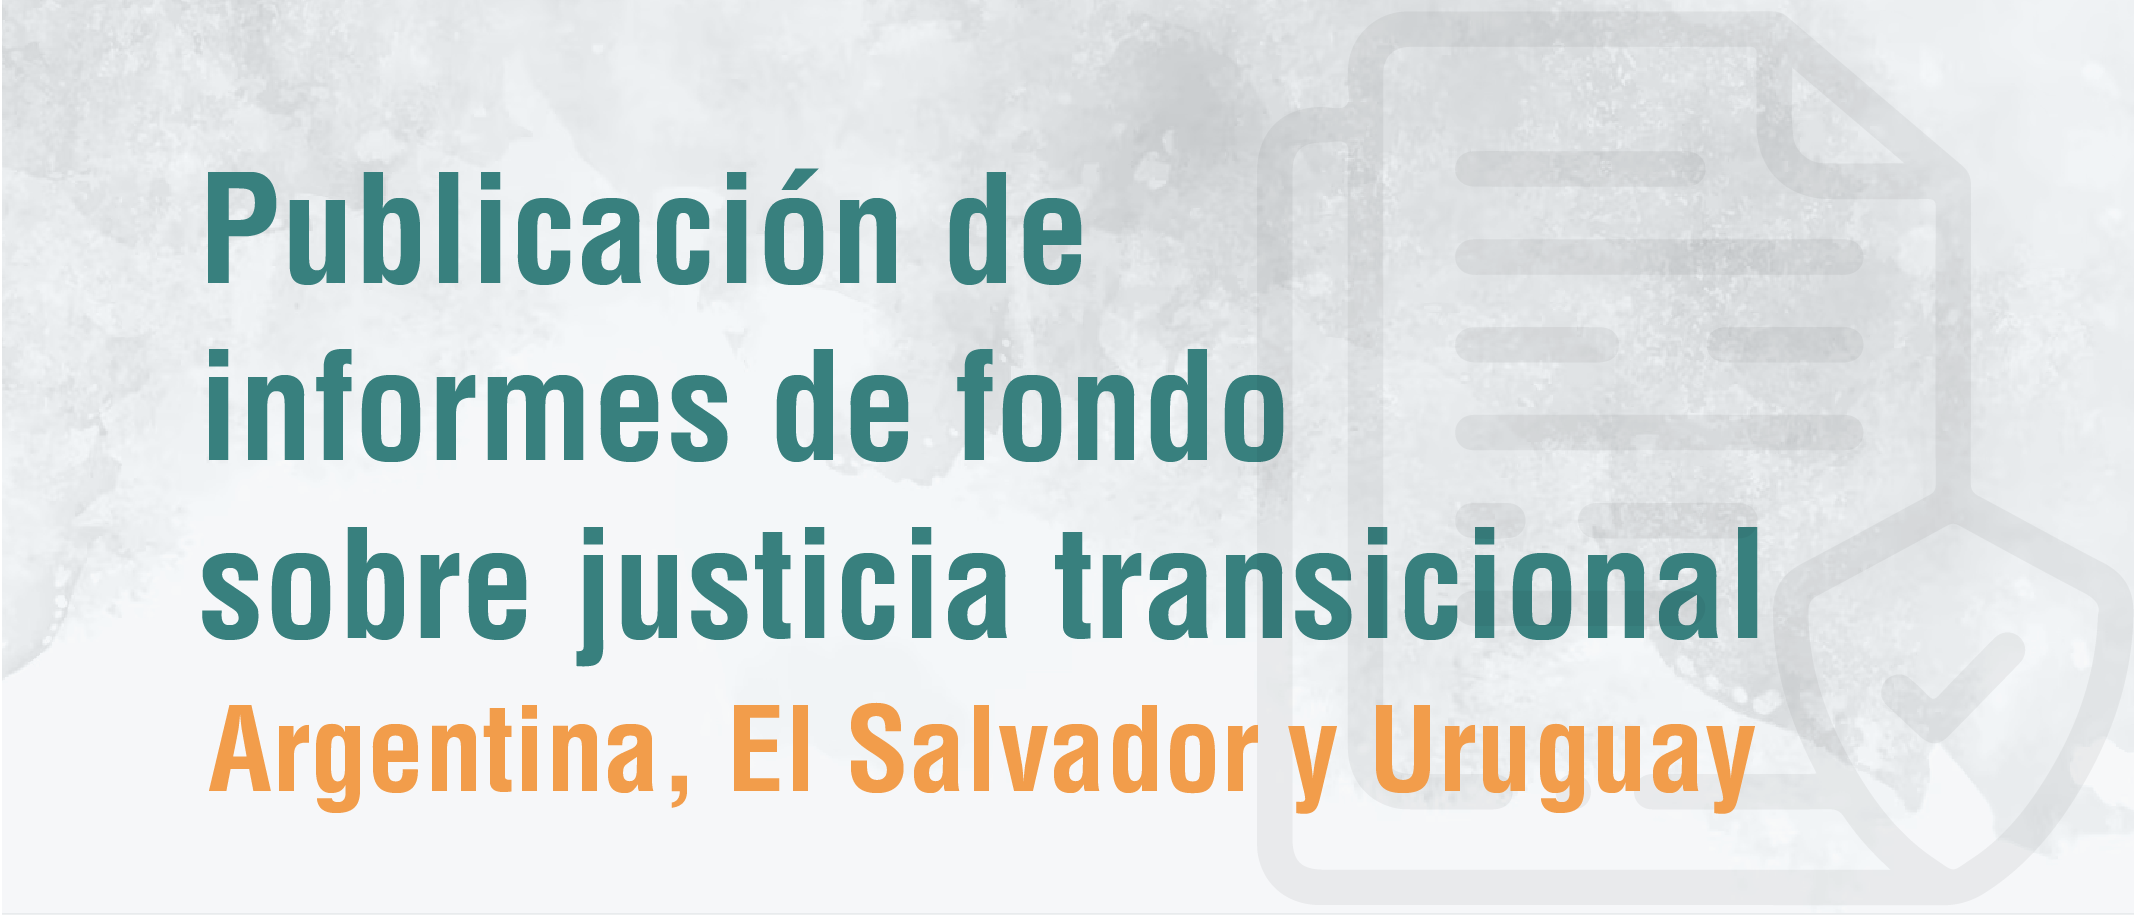 Publicación de informes de fondo, sobre Argentina, El Salvador, Argentina y Uruguay sobre justicia transicional